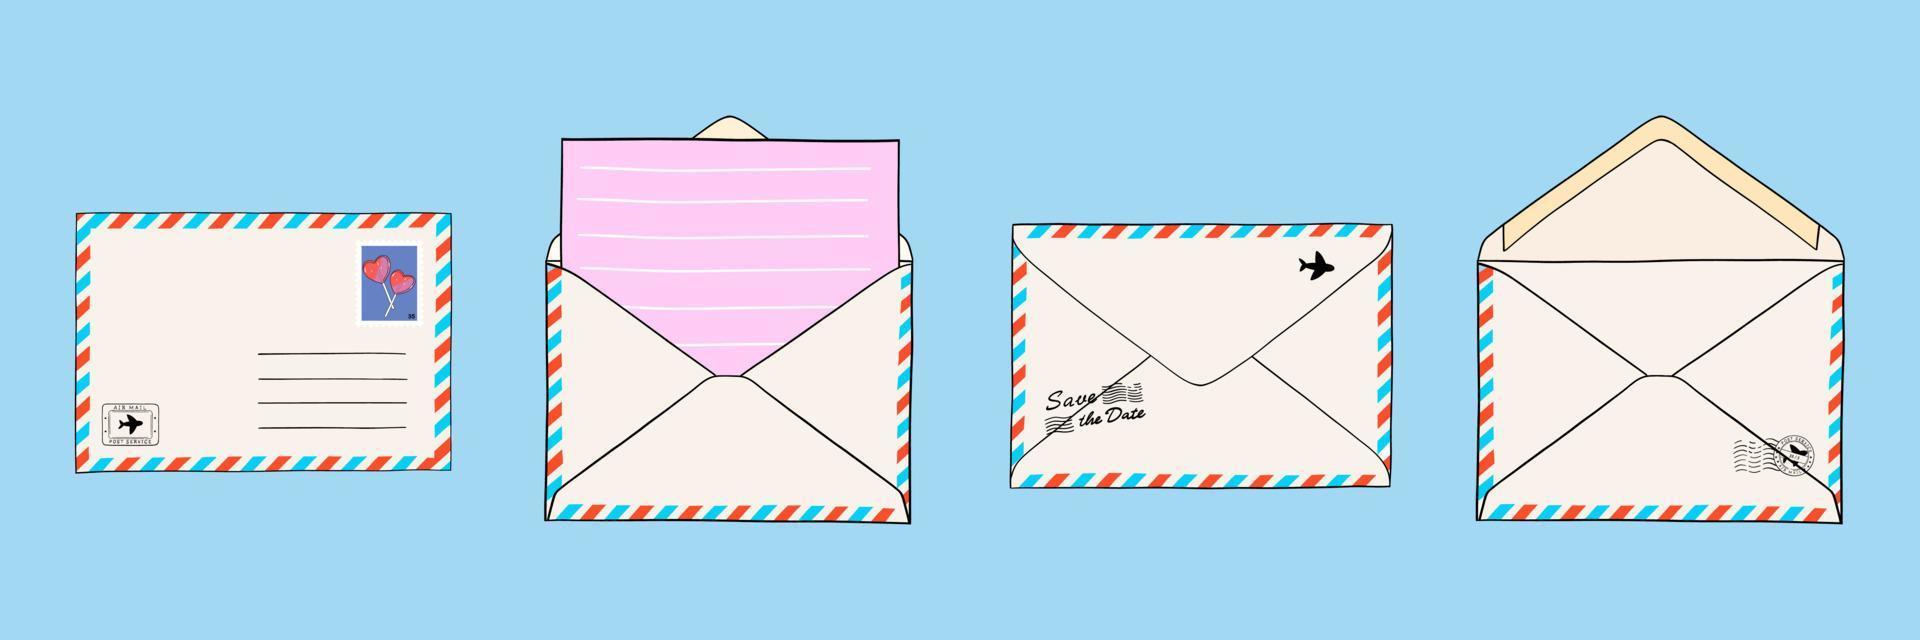 verzameling van post- enveloppen met mail, poststempels en ansichtkaarten. papier document ingesloten in een envelop. geïsoleerd vector illustraties voor web en afdrukken